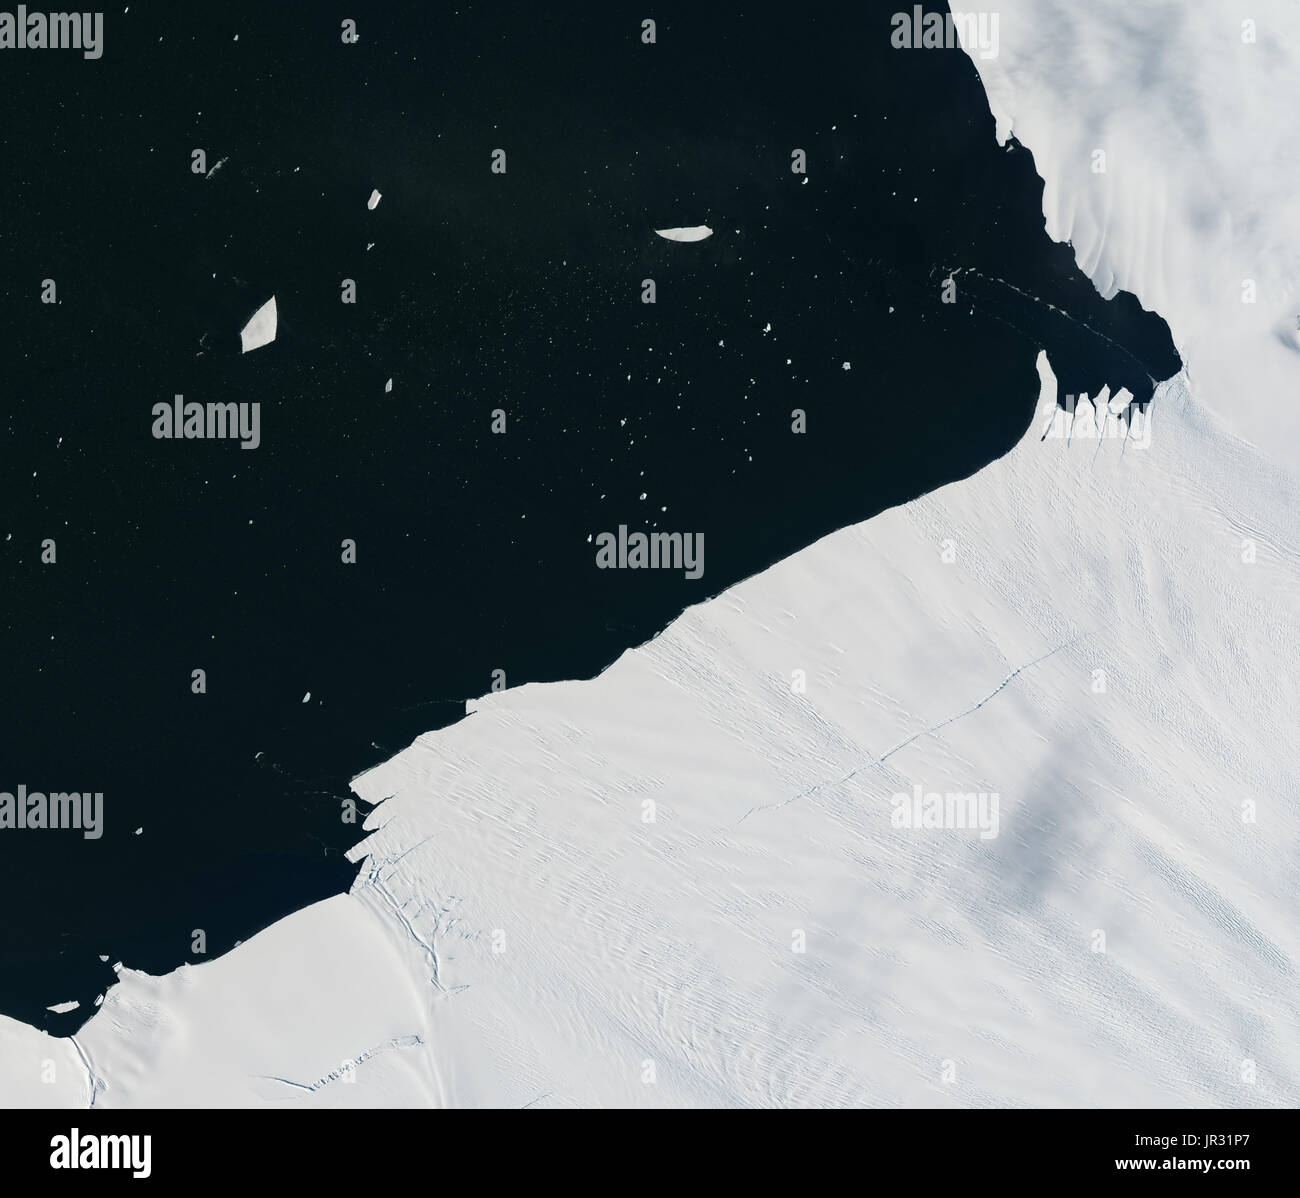 Pine Island Glacier, Antartide, il 24 gennaio 2017, catturata dalla terra operative imager (OLI) sul satellite Landsat 8. Confronta con jg5747 da gennaio 26, che mostra un frammento di iceberg spezzando il bordo. Riscaldare l'acqua dell'oceano sembra essere di indebolire il ripiano di ghiaccio. Foto Stock